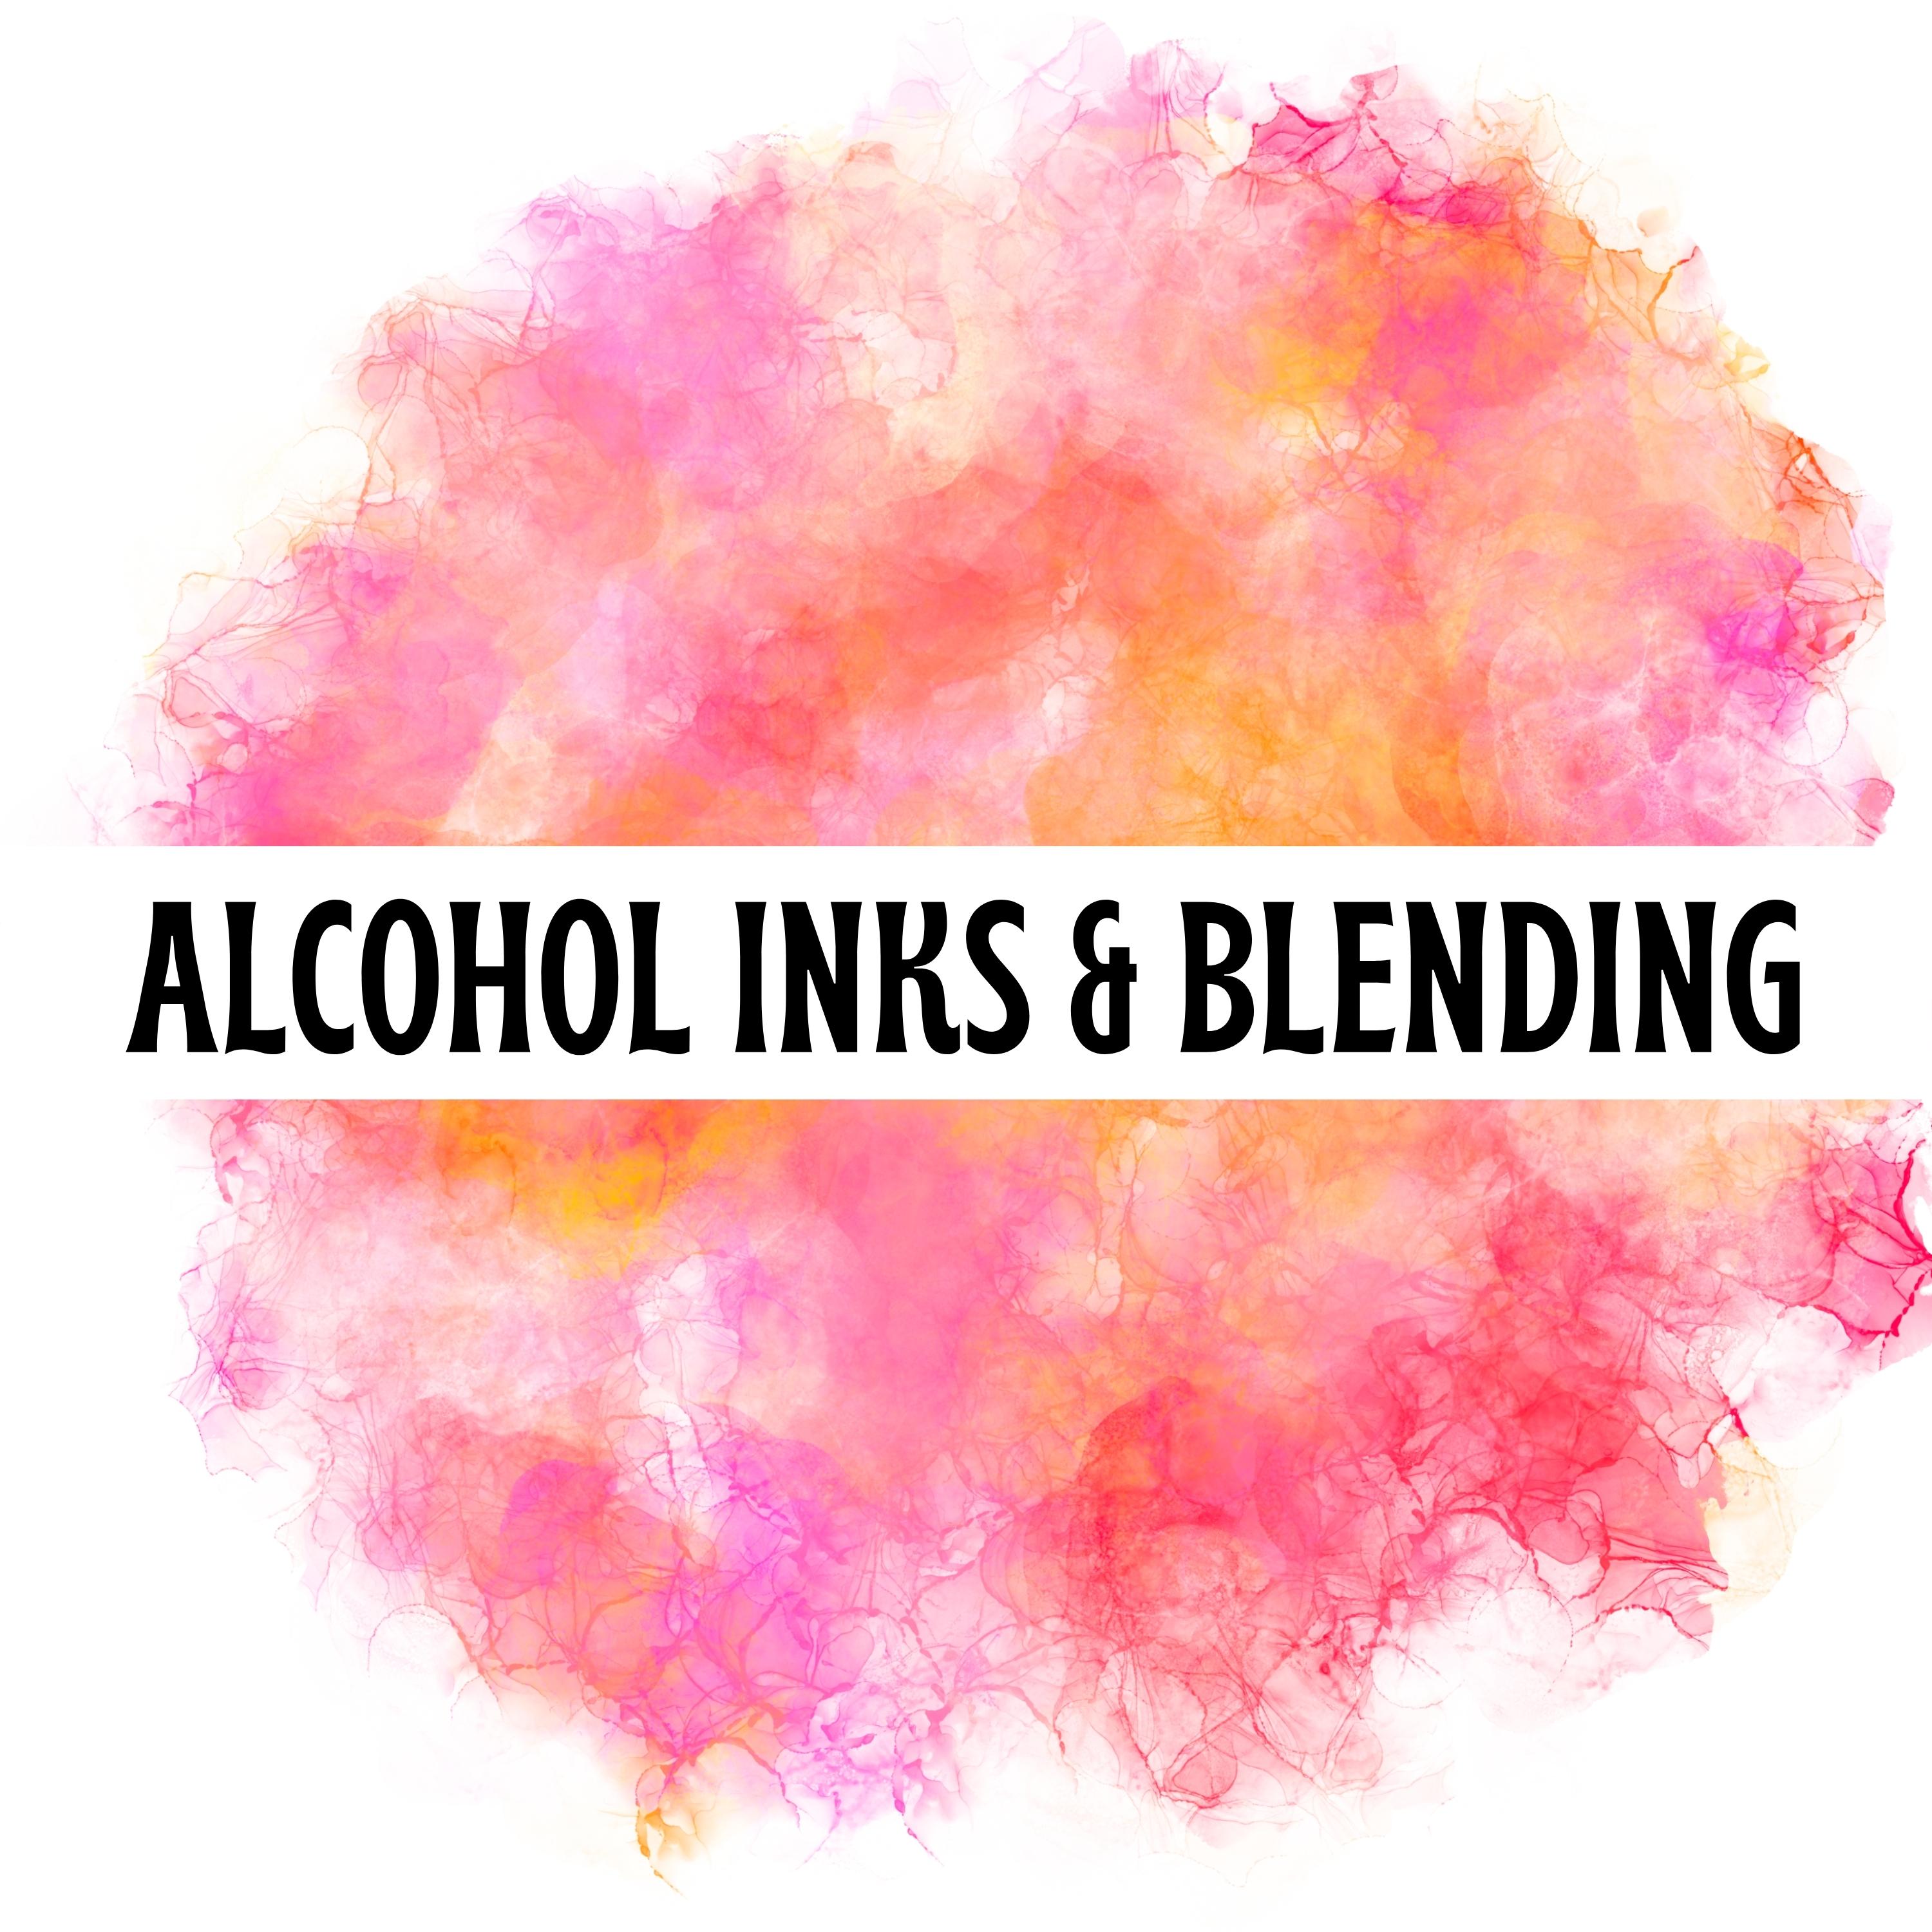 Pastel Alcohol Inks, Alcohol Inks for Alcohol Ink Art